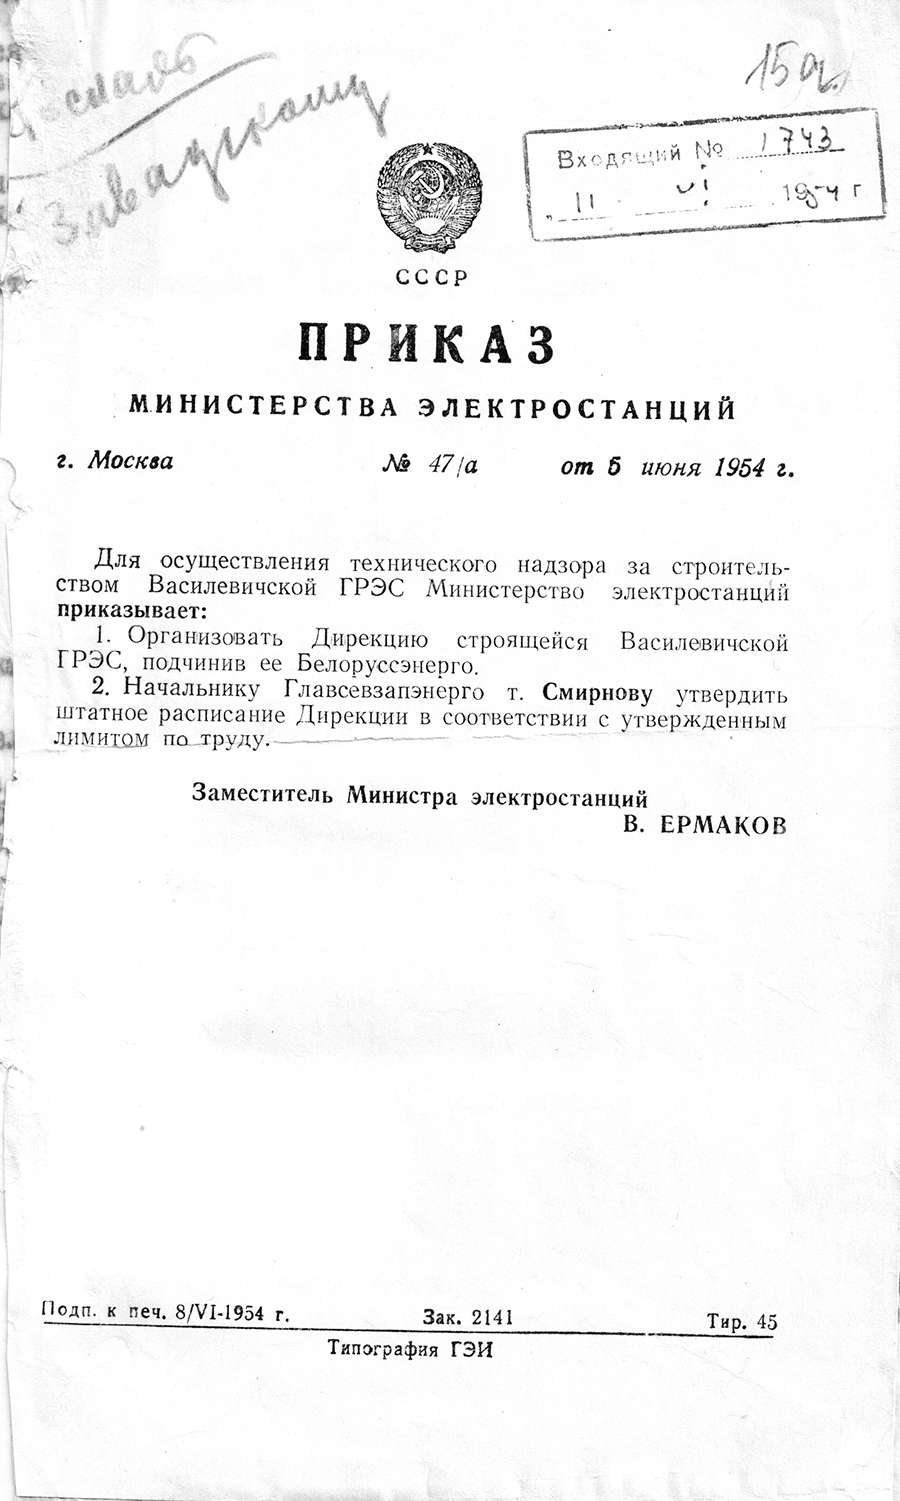 Befehl Nr. 47/a des Ministeriums für Kraftwerke der UdSSR über die Durchführung der Aufsicht des Autors über den Bau des staatlichen Kraftwerks von Vasilevich-с. 0